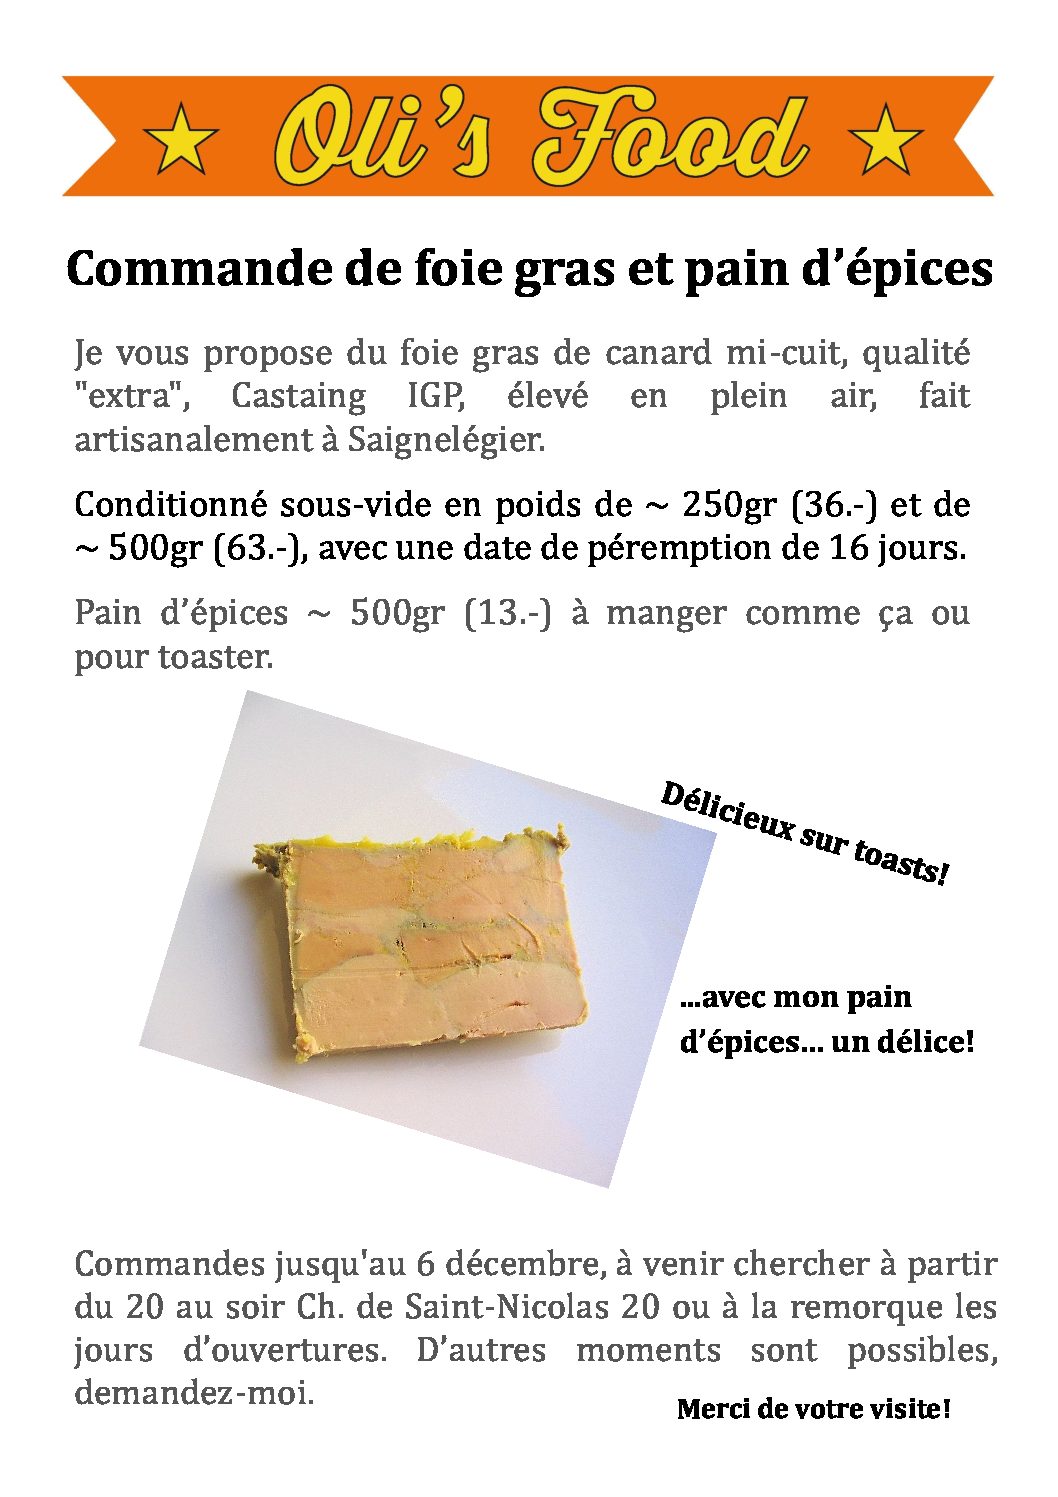 Commandes de foie gras et pain d’épices ouvertes